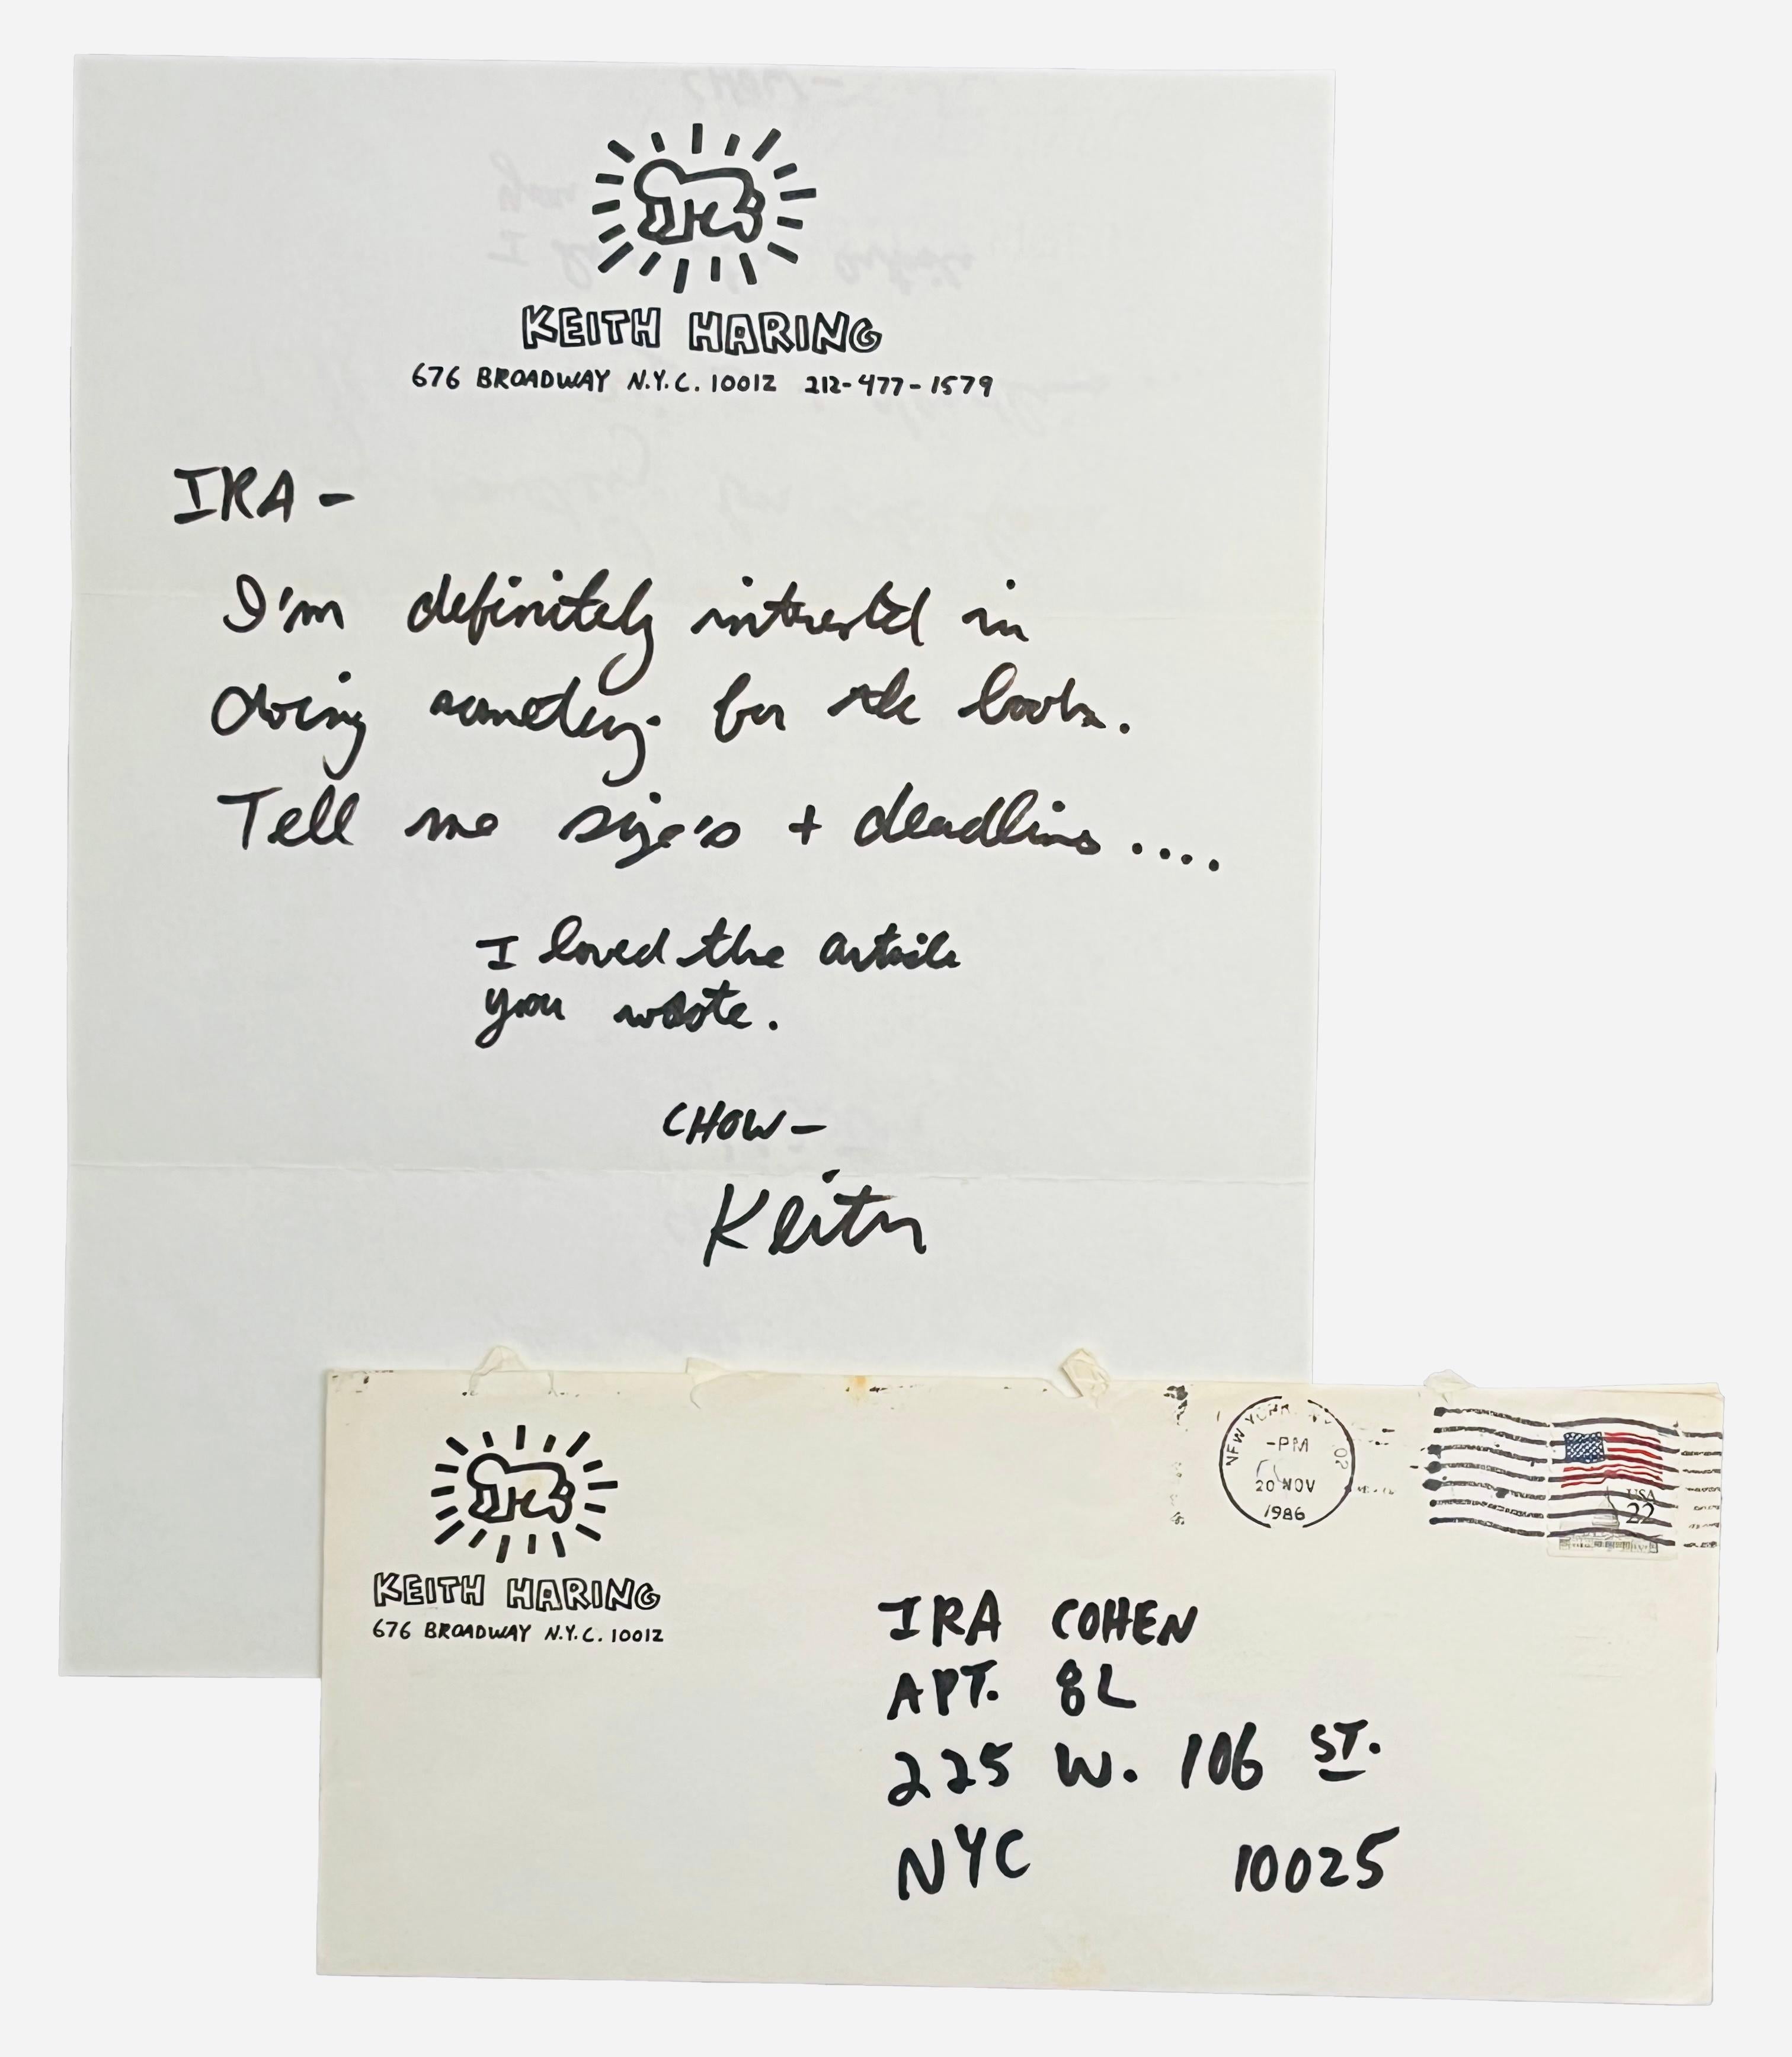 Lettre manuscrite de Keith Haring 1986 :
Une rare lettre manuscrite de Keith Haring datant des années 1980, exécutée sur le papier à lettres personnel de l'artiste. Une réponse personnelle de Haring à un éditeur new-yorkais nommé Ira Cohen.